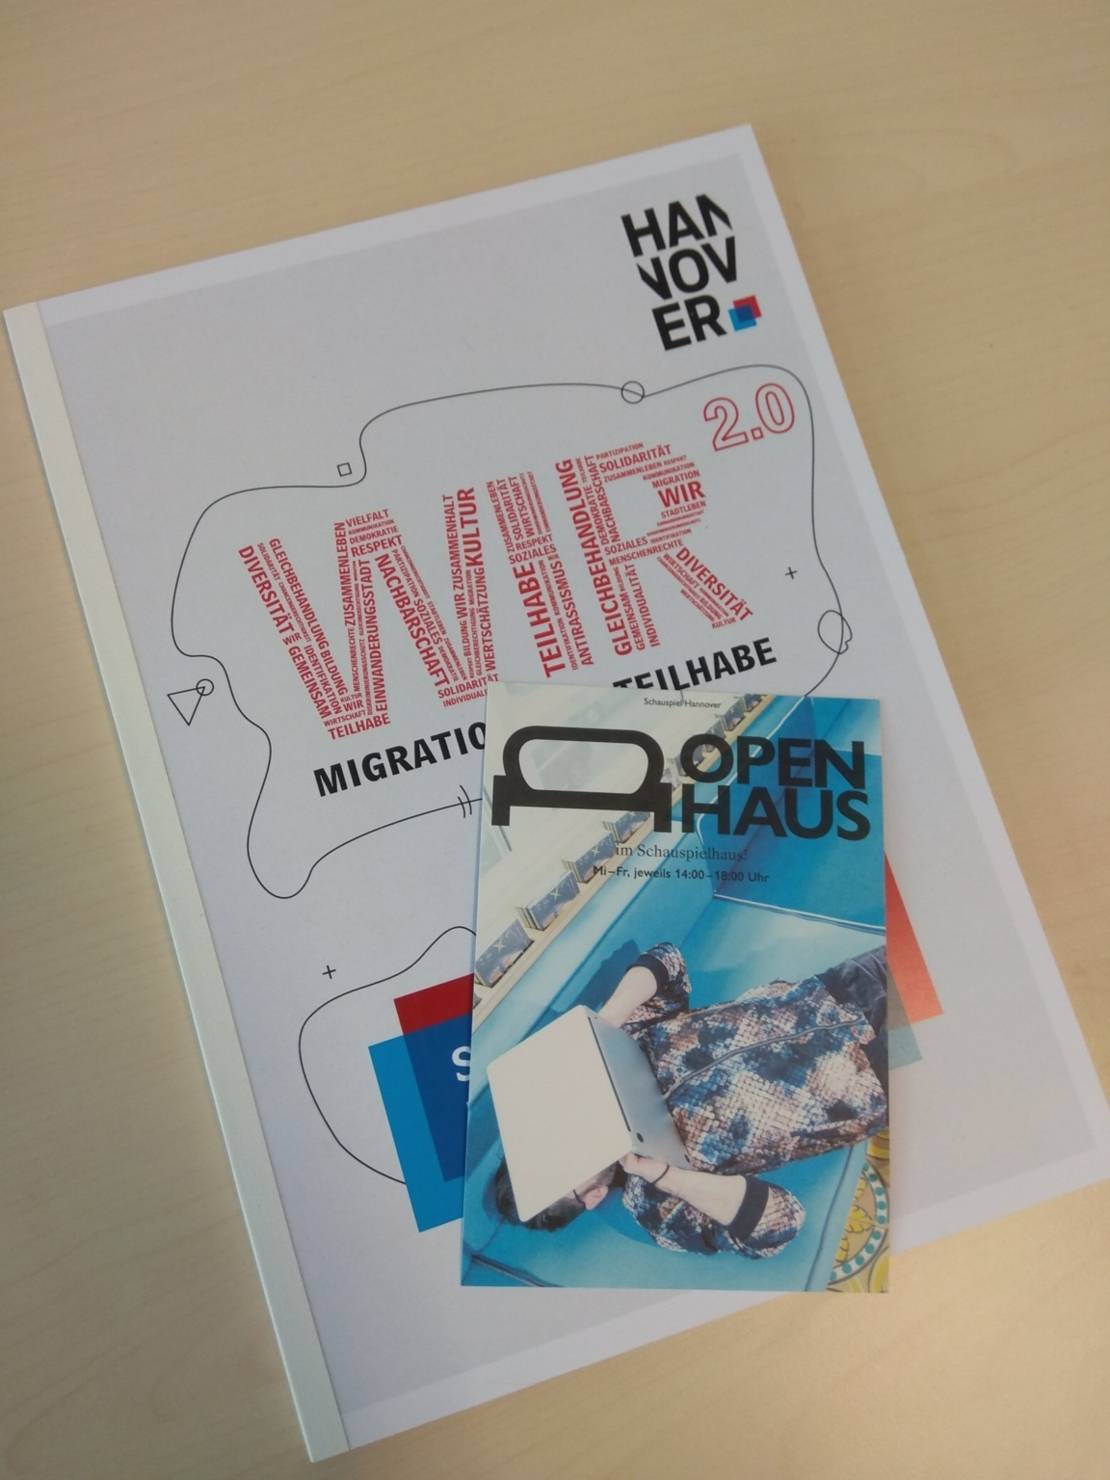 Ein in Blau gehaltener Flyer mit der Aufschrift "Open Haus" liegt auf dem WIR2.0-Maßnahmenkatalog